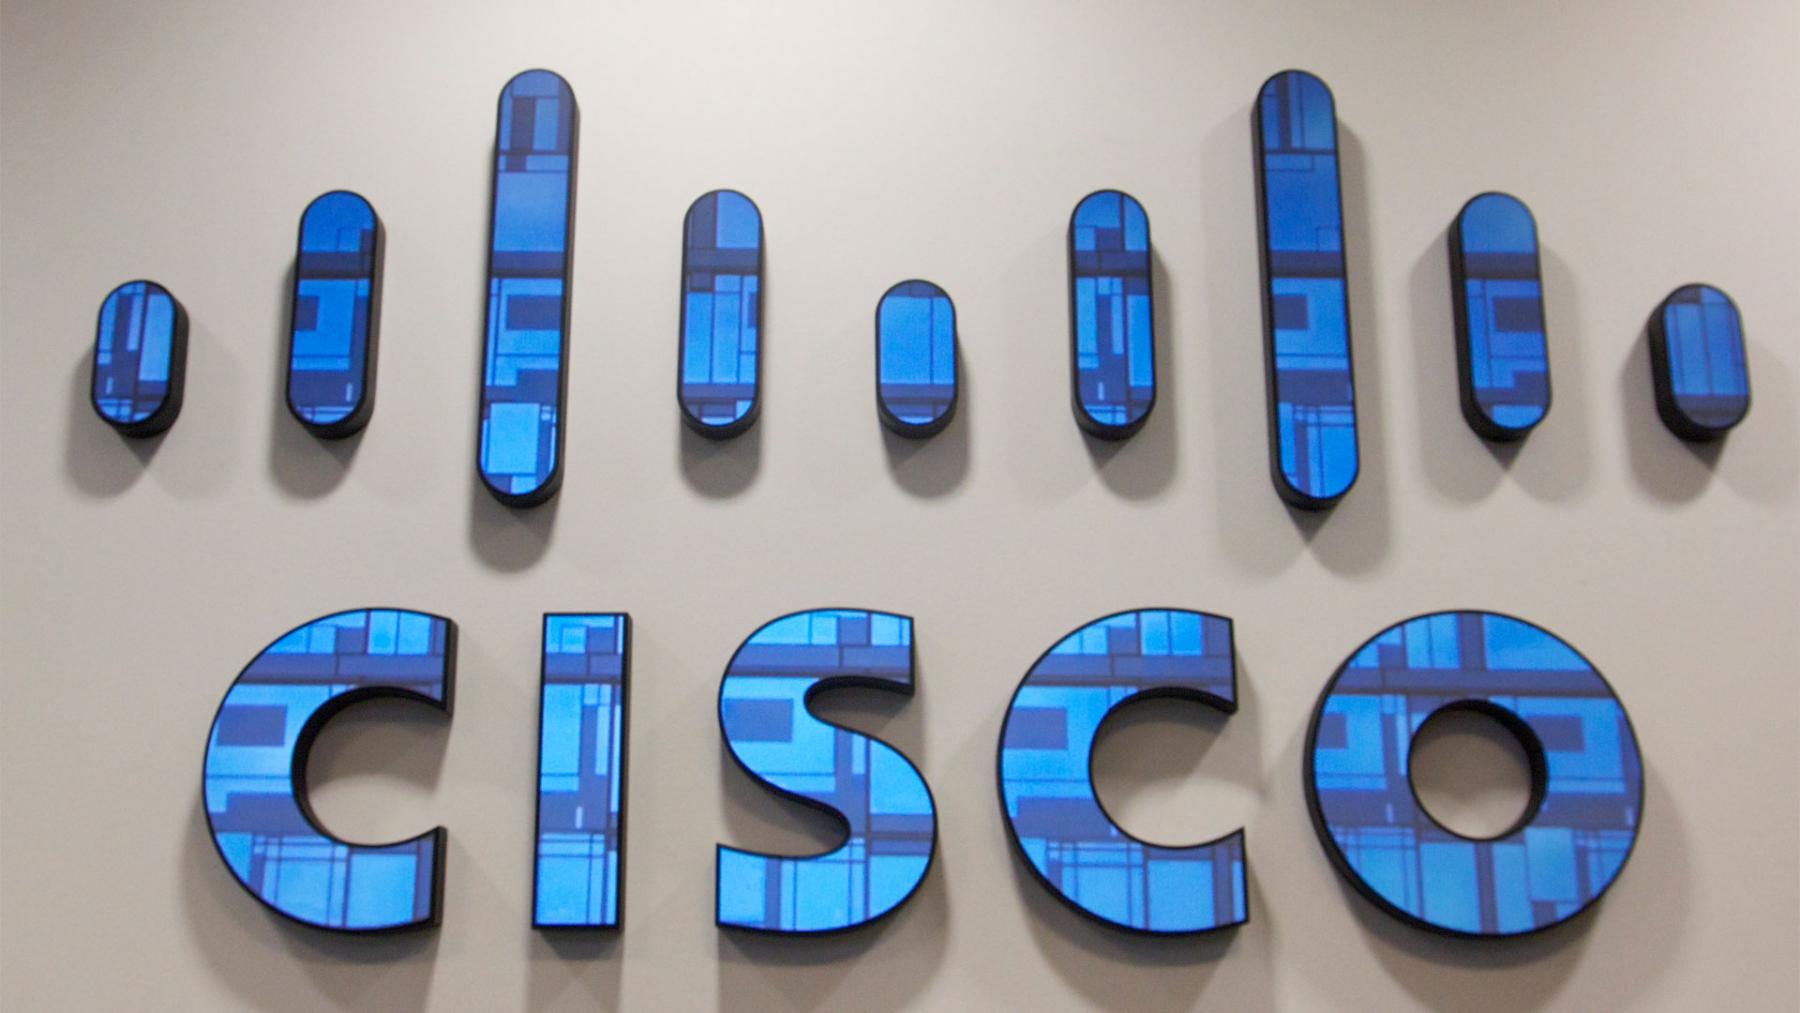 Москва использует решения Cisco для "Безопасного города" и транспортной системы